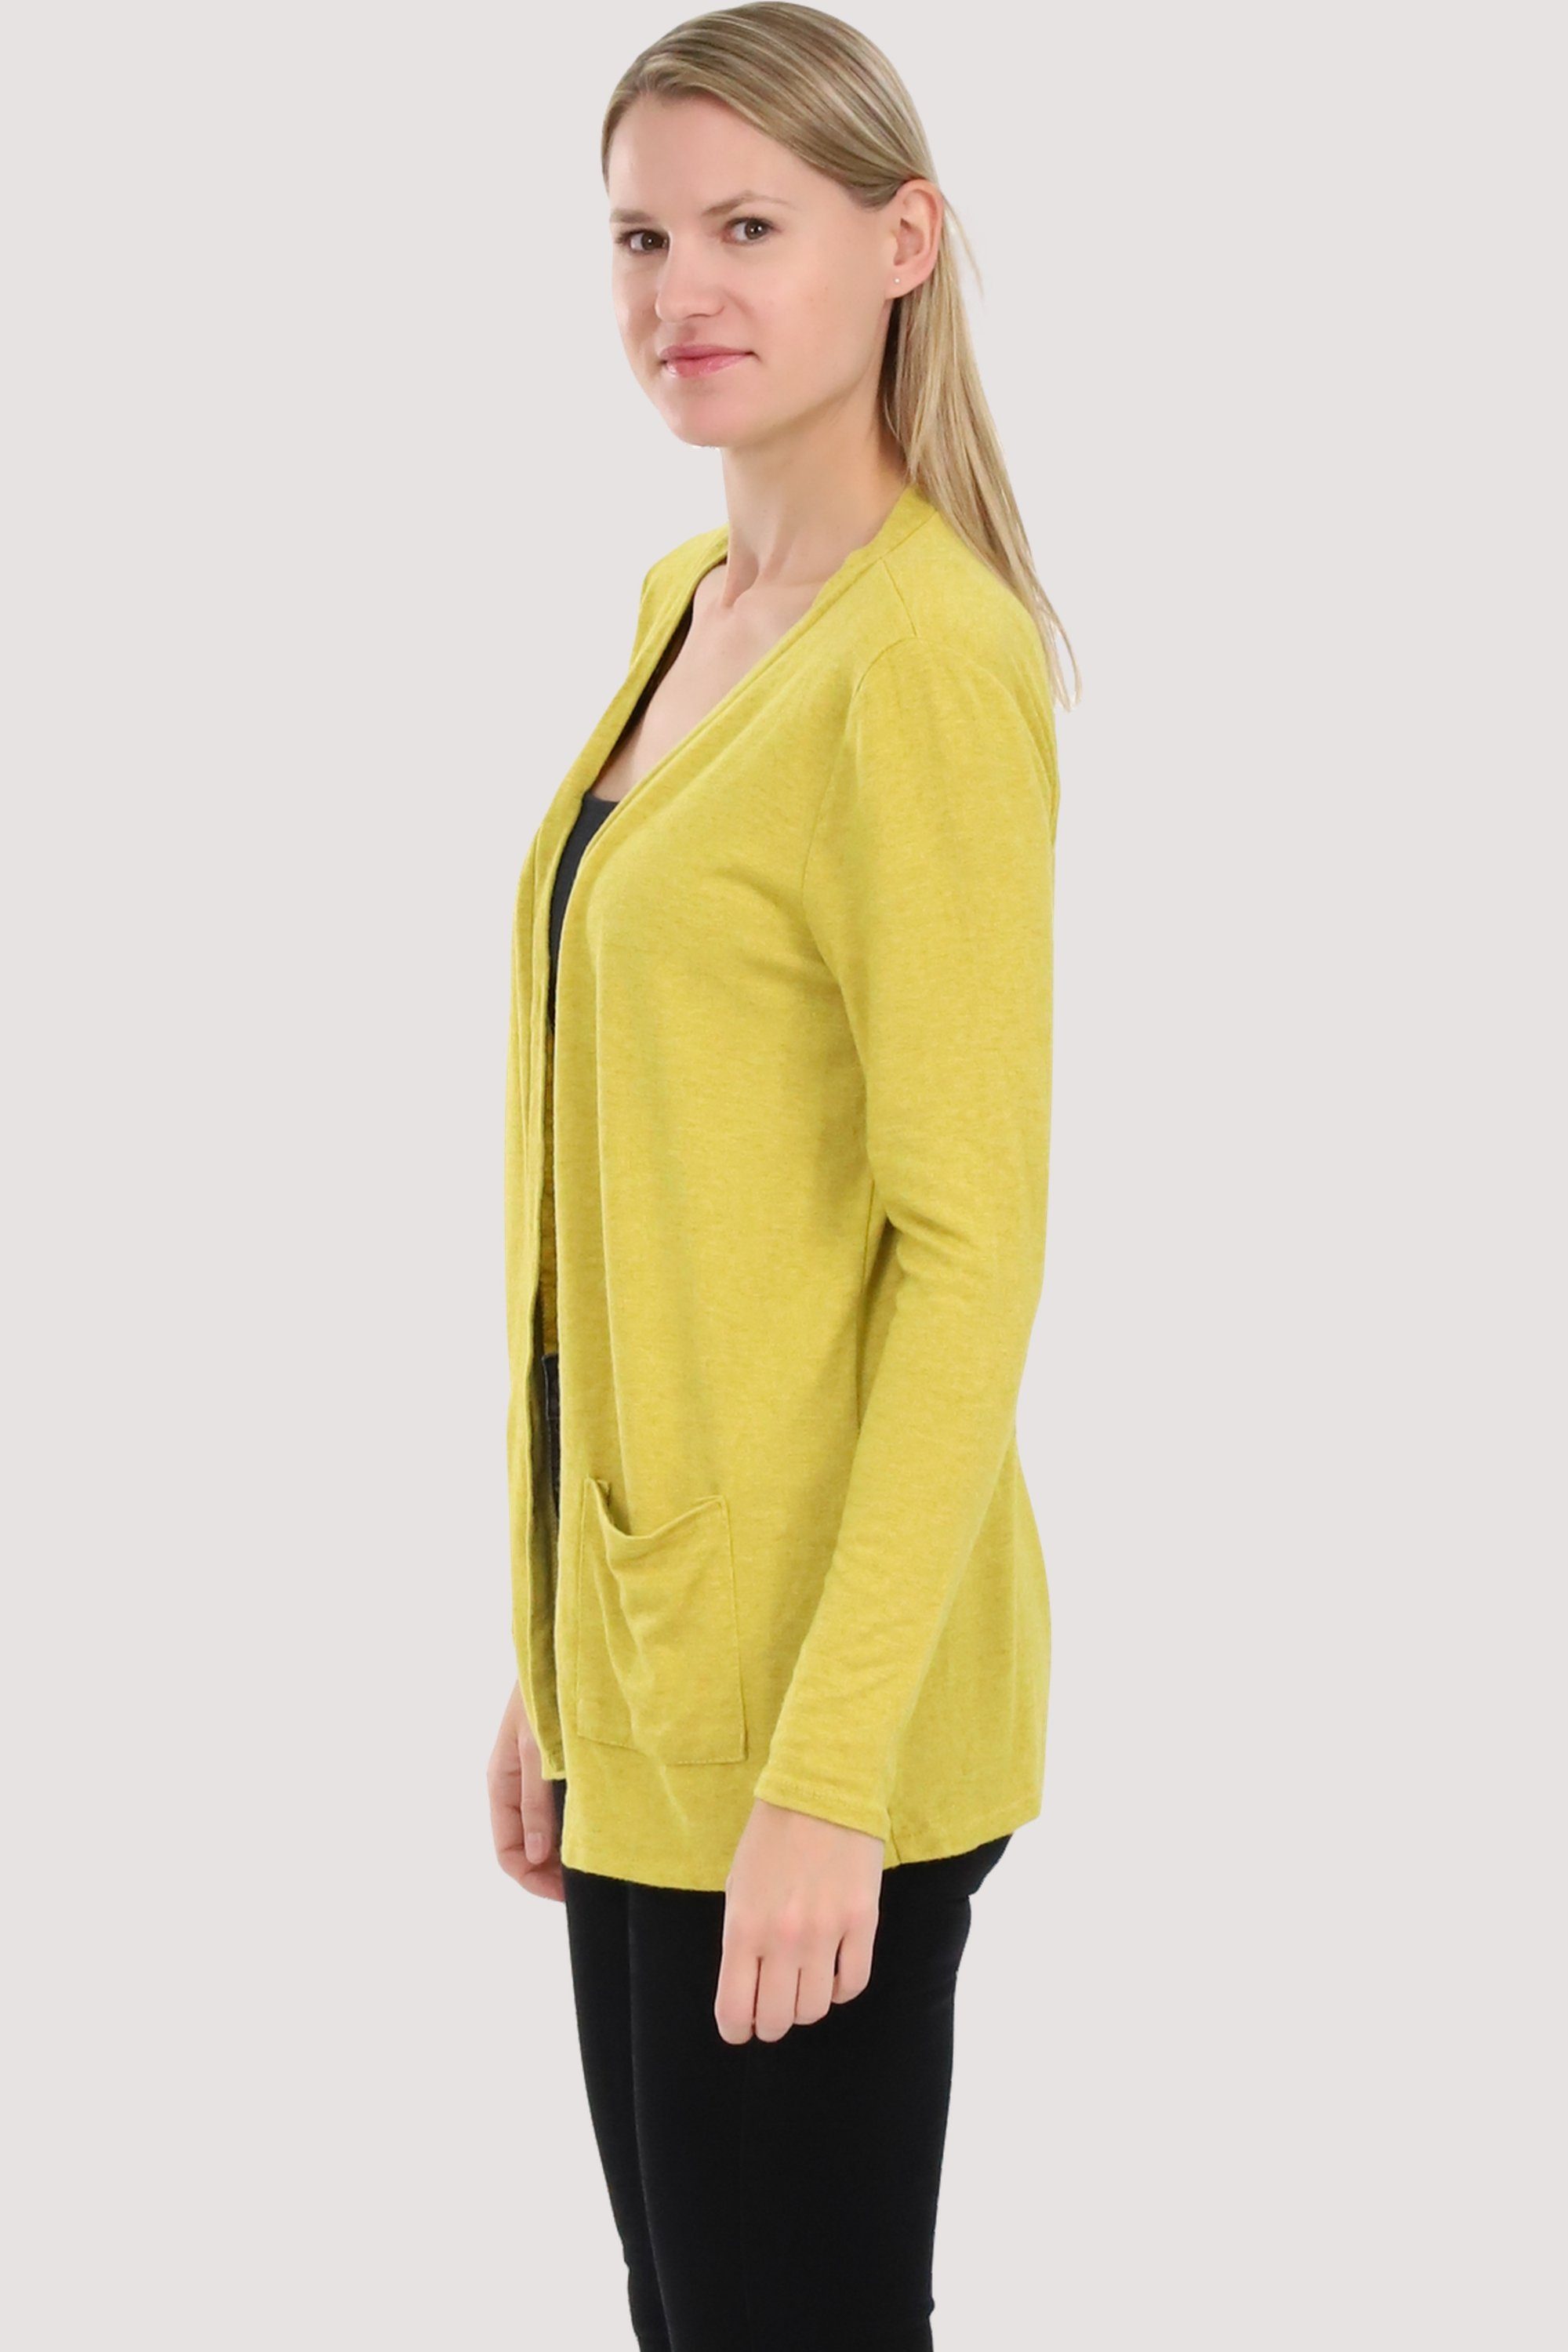 Eingriffstaschen Jacke Feinstrick gelb malito more than 2243 mit Cardigan fashion